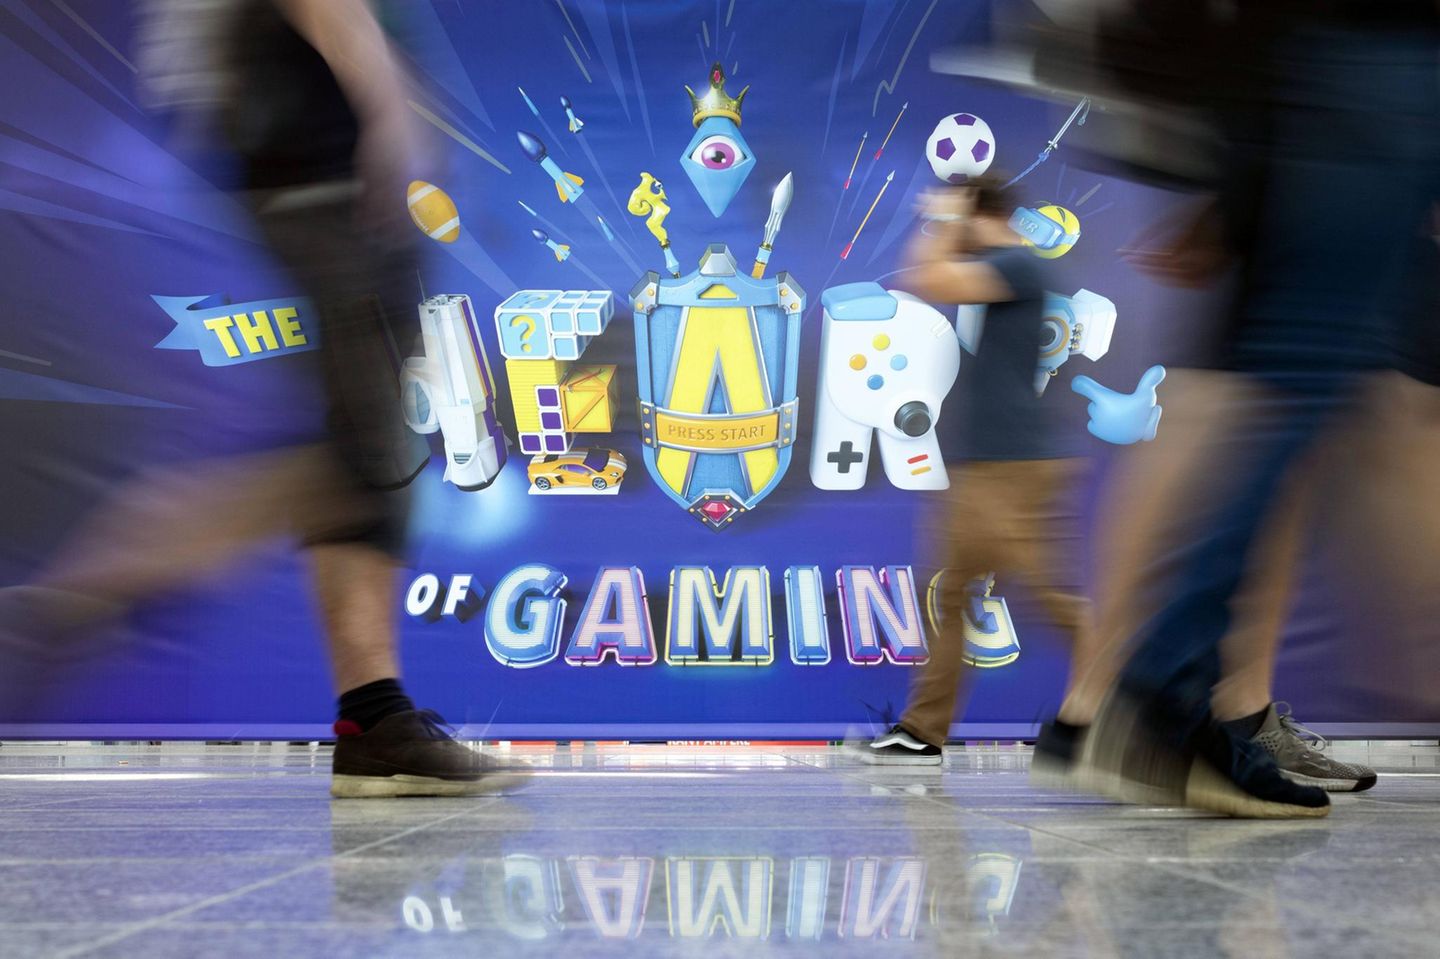 Besucher der weltgrößten Computerspielmesse Gamescom 2019 in Köln. Pandemiebedingt findet die Messe seitdem nur noch virtuell statt